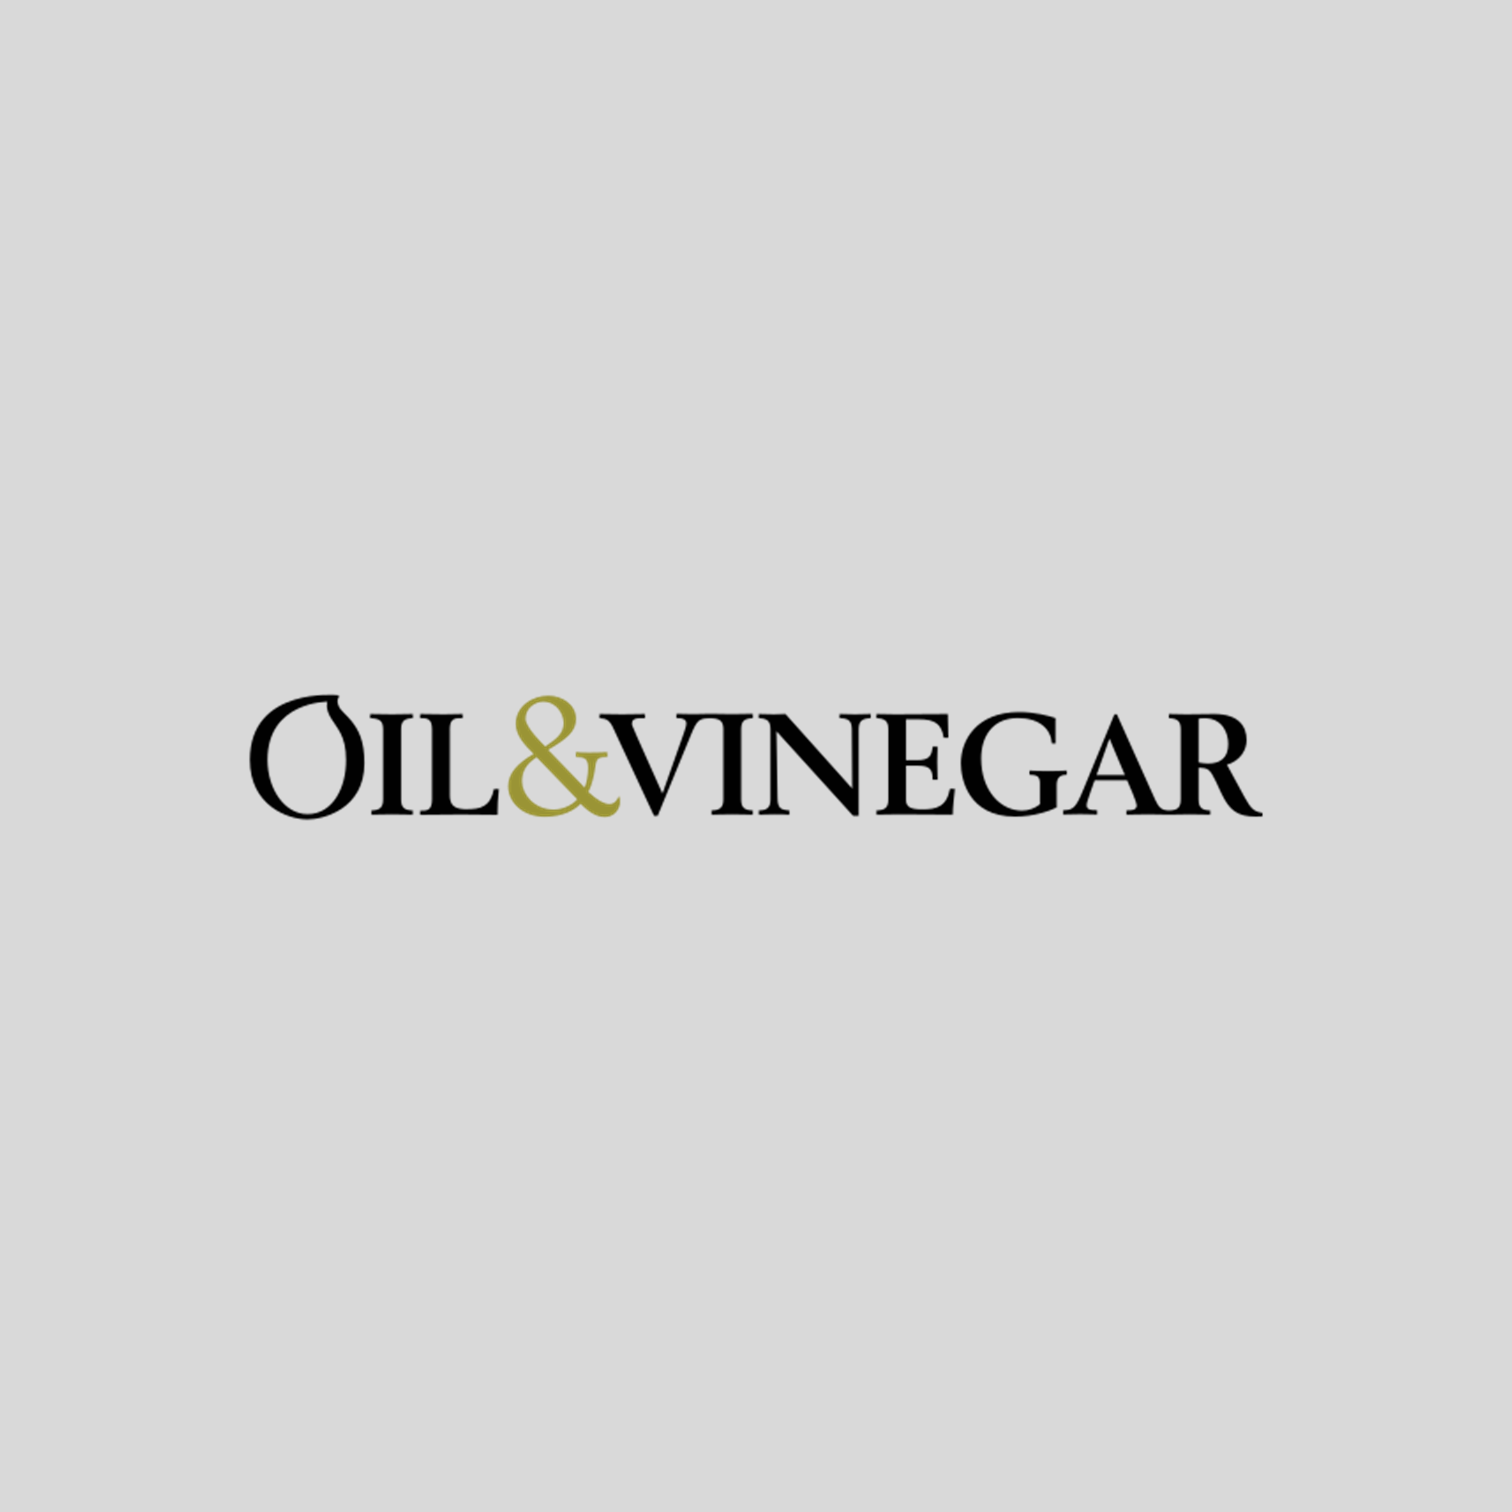 Tegenover Behandeling Verpletteren Oil & Vinegar Schenktuit voor olijfolie - Oil & Vinegar